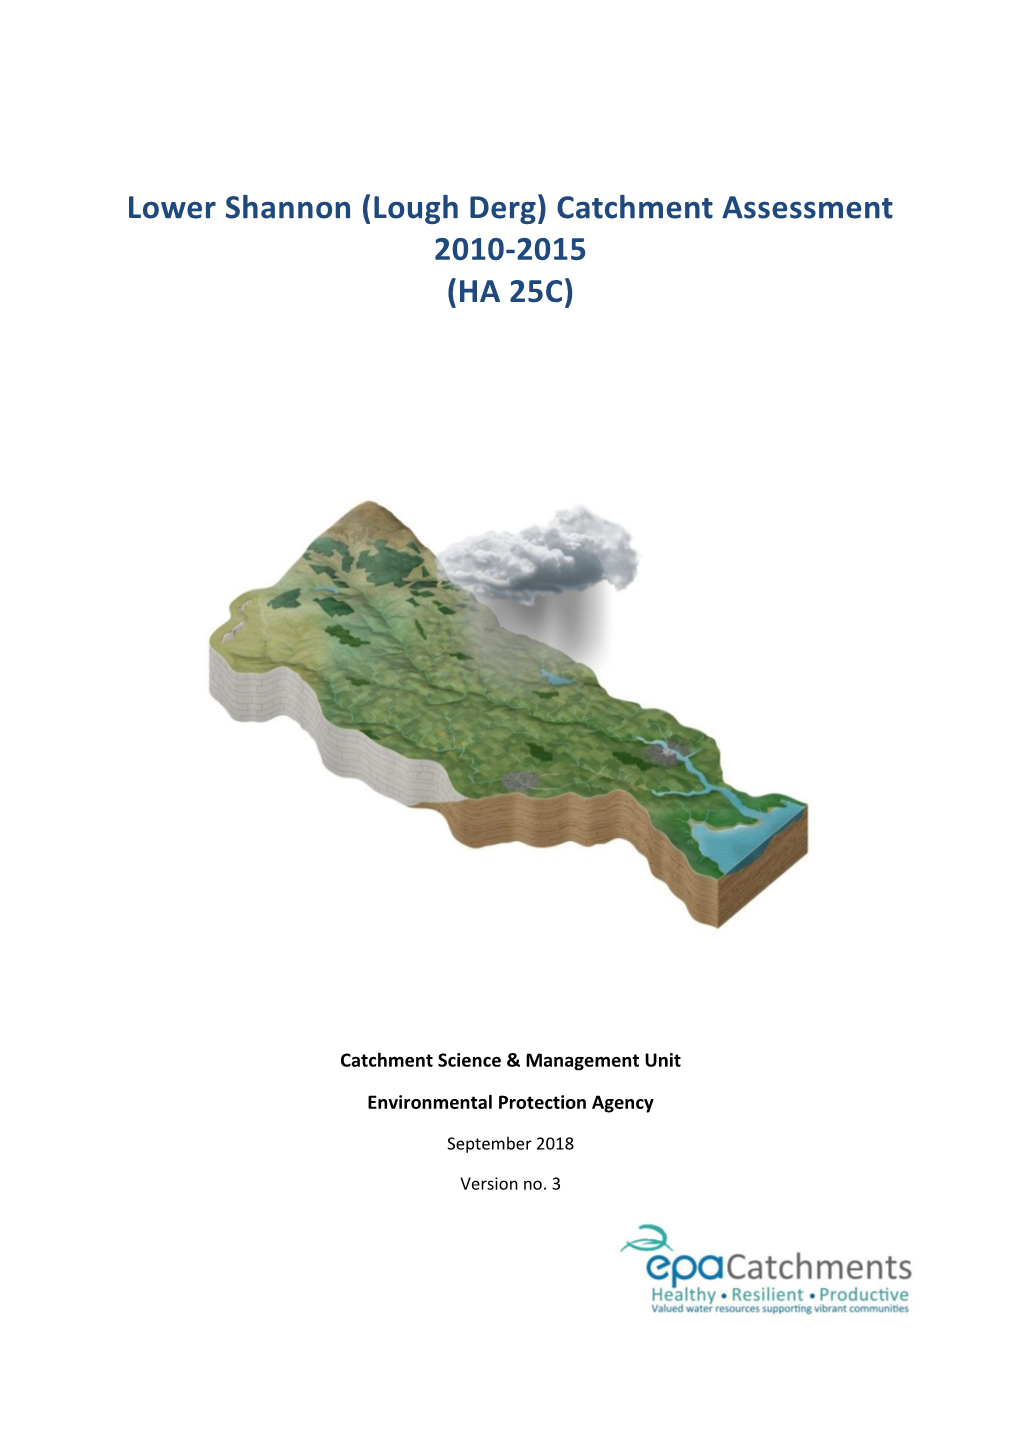 Lower Shannon (Lough Derg) Catchment Assessment 2010-2015 (HA 25C)